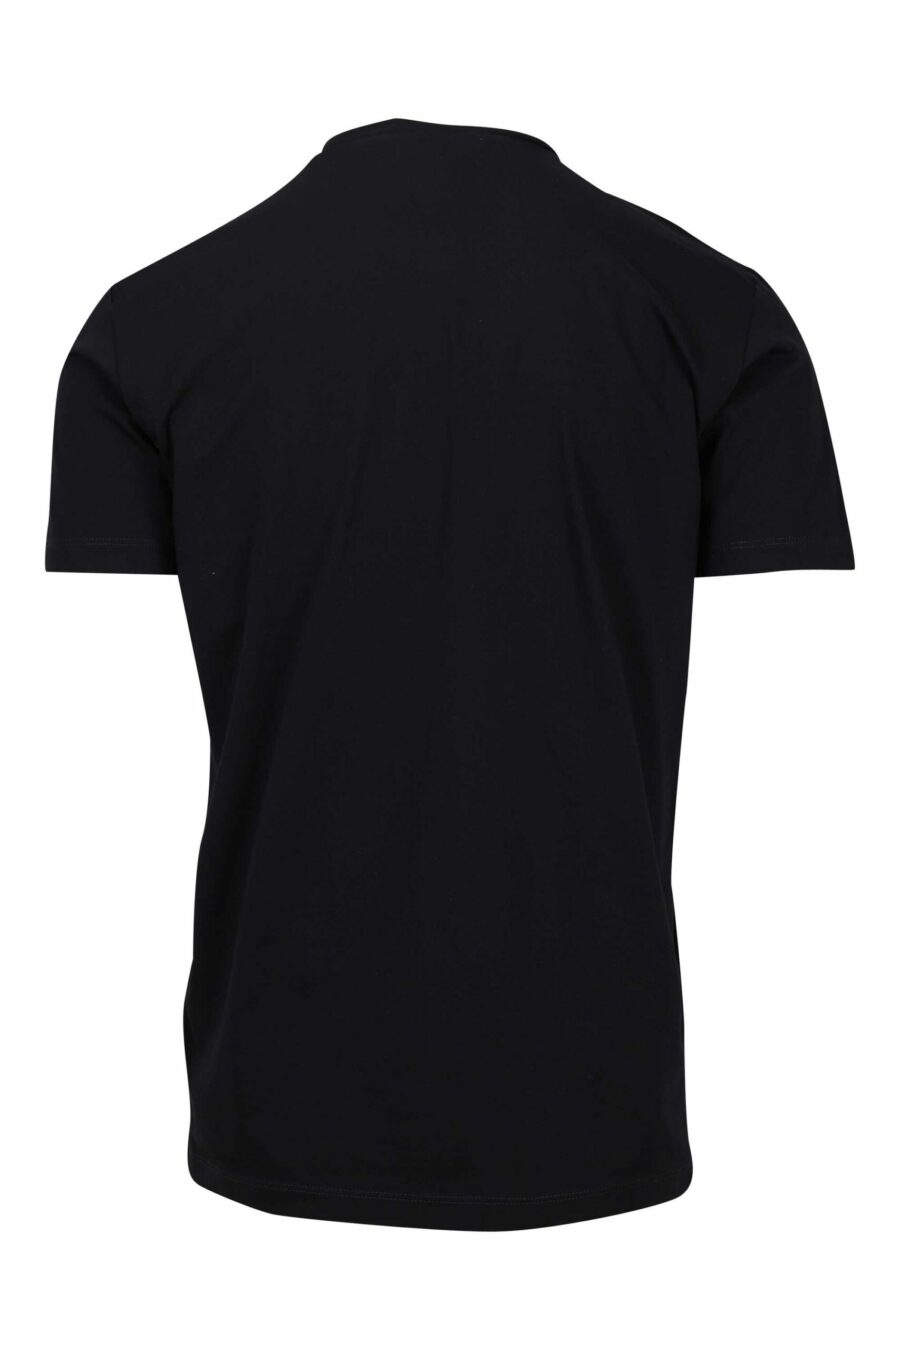 Schwarzes T-Shirt mit quadratischem "Icon" Maxilogo - 8052134981047 1 skaliert